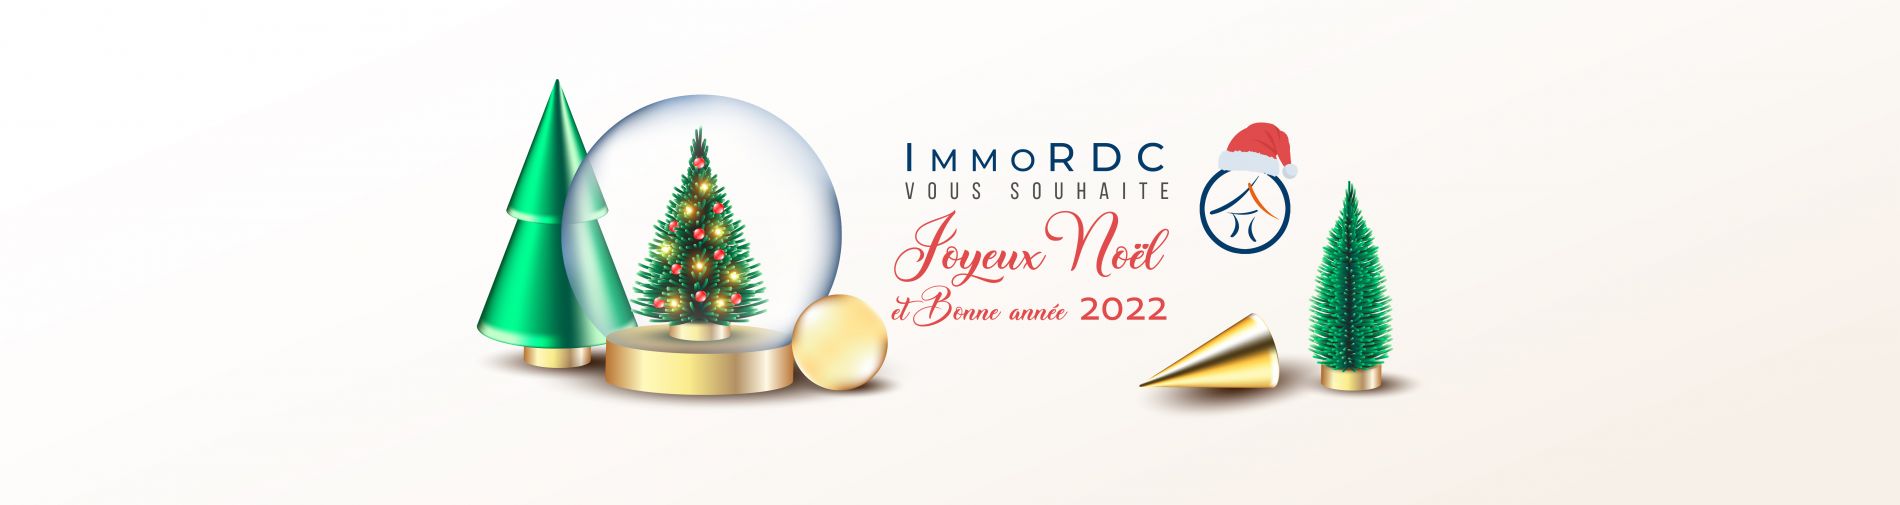 ImmoRDC - Nos Vœux les Meilleurs pour 2022